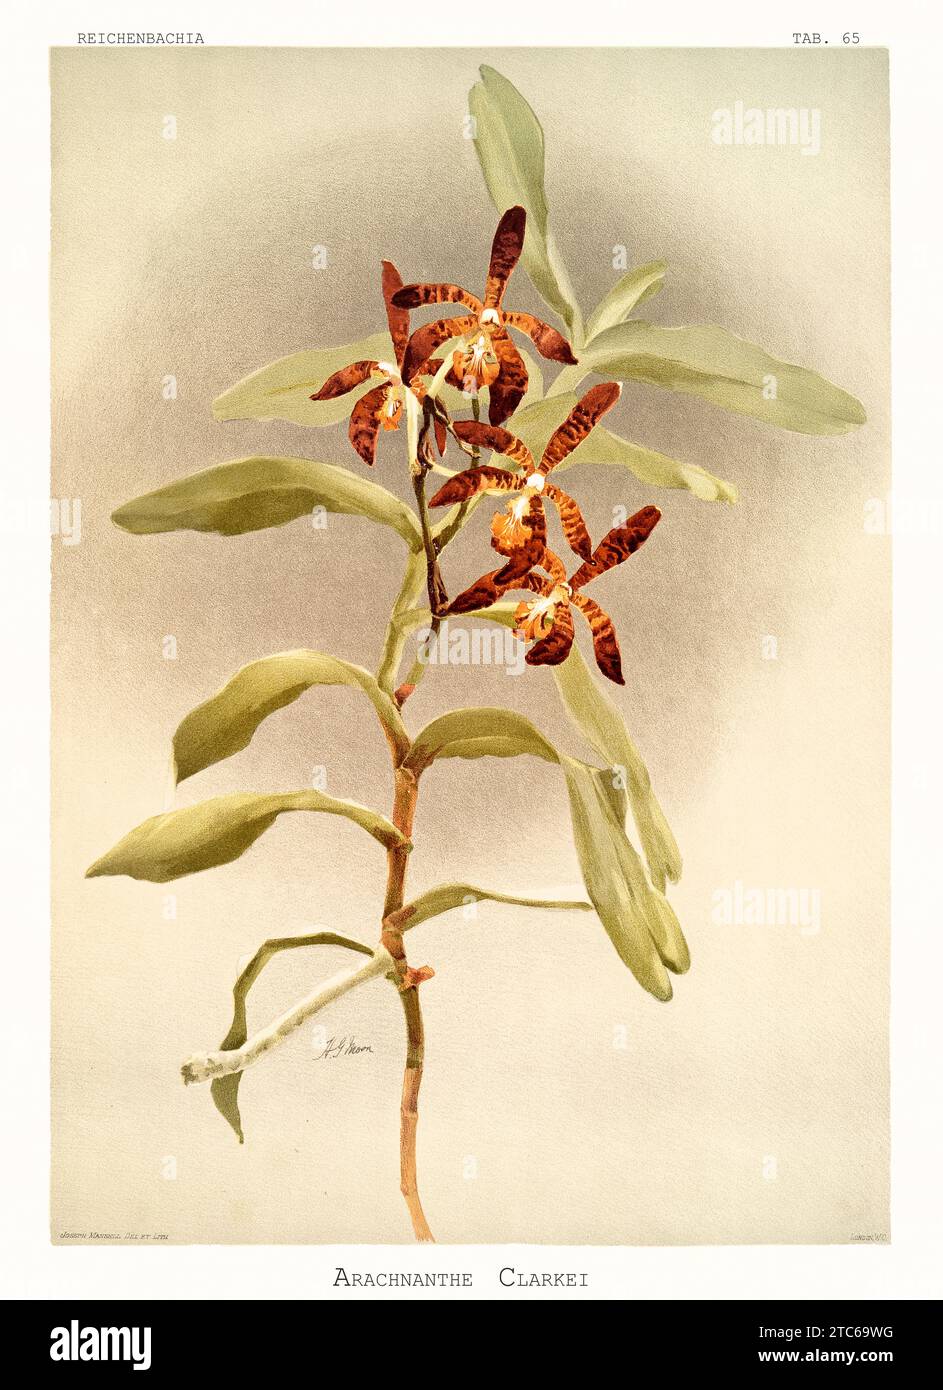 Vieille illustration de l'Arachnanthe de Clark (Arachnanthe clarkeii). Reichenbachia, de F. Sander. St. Albans, Royaume-Uni, 1888 - 1894 Banque D'Images